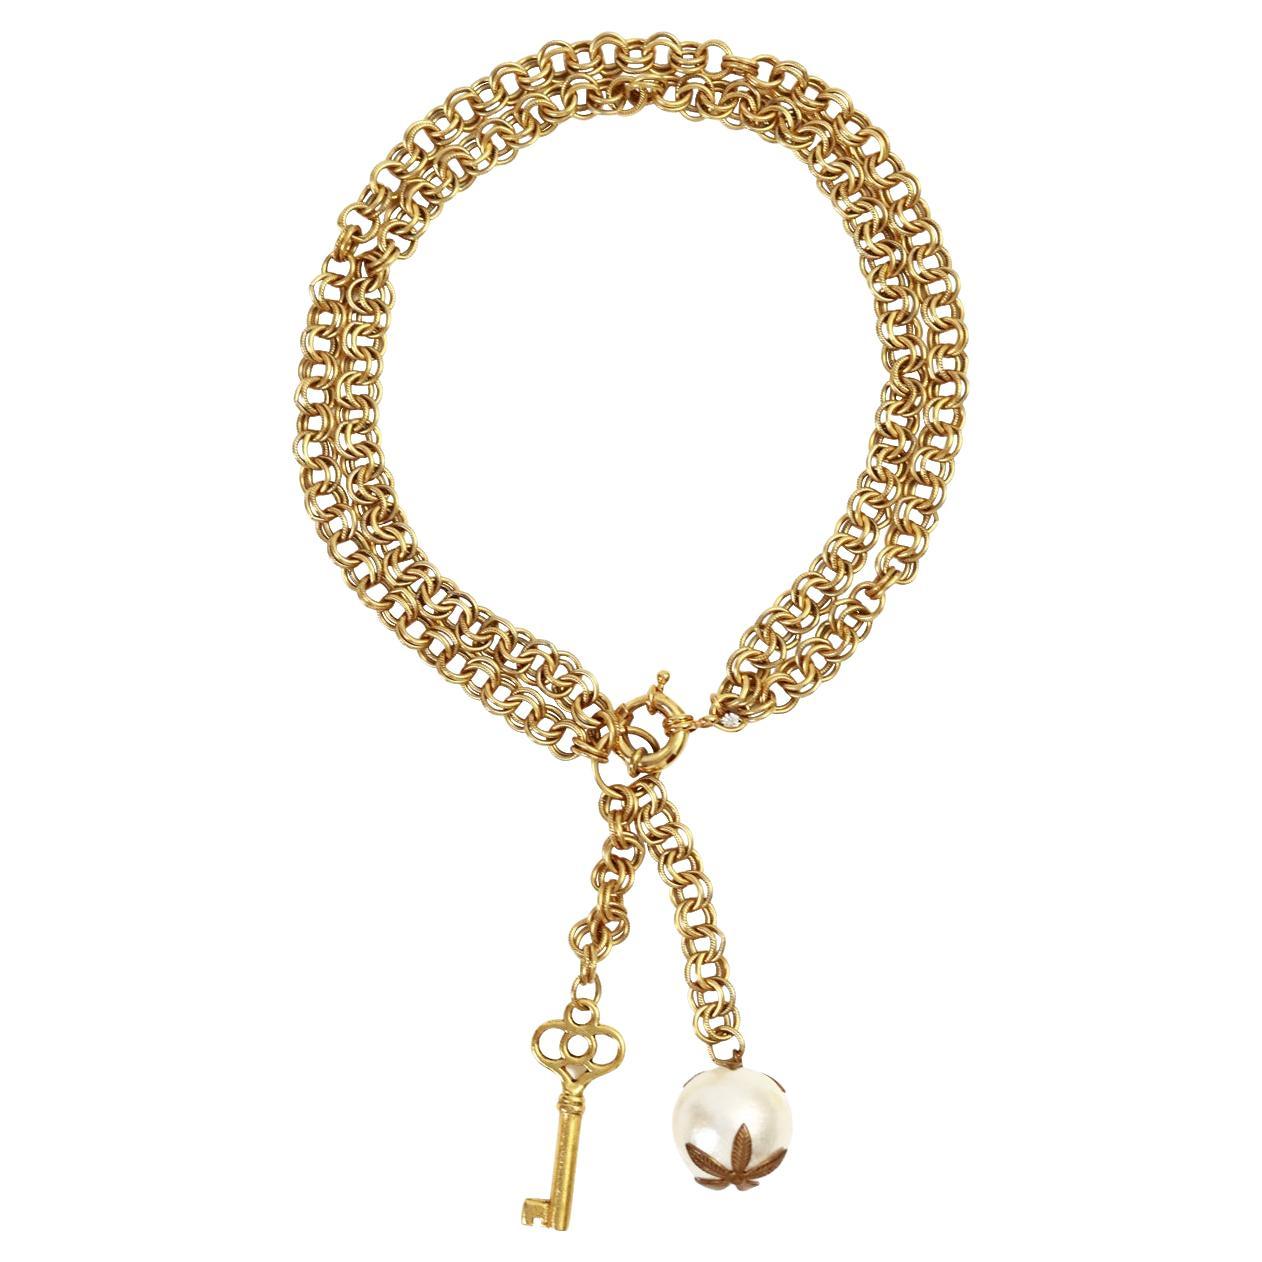 Vintage Gold Tone Lariat Drop Key und Faux Pearl Halskette CIRCA 1980's.  Die doppelte Kette mit den schweren, herabbaumelnden Stücken verleiht ihr einen sehr antiken Touch und sie sieht einfach großartig aus.  Alle funktionierenden Teile sind ein